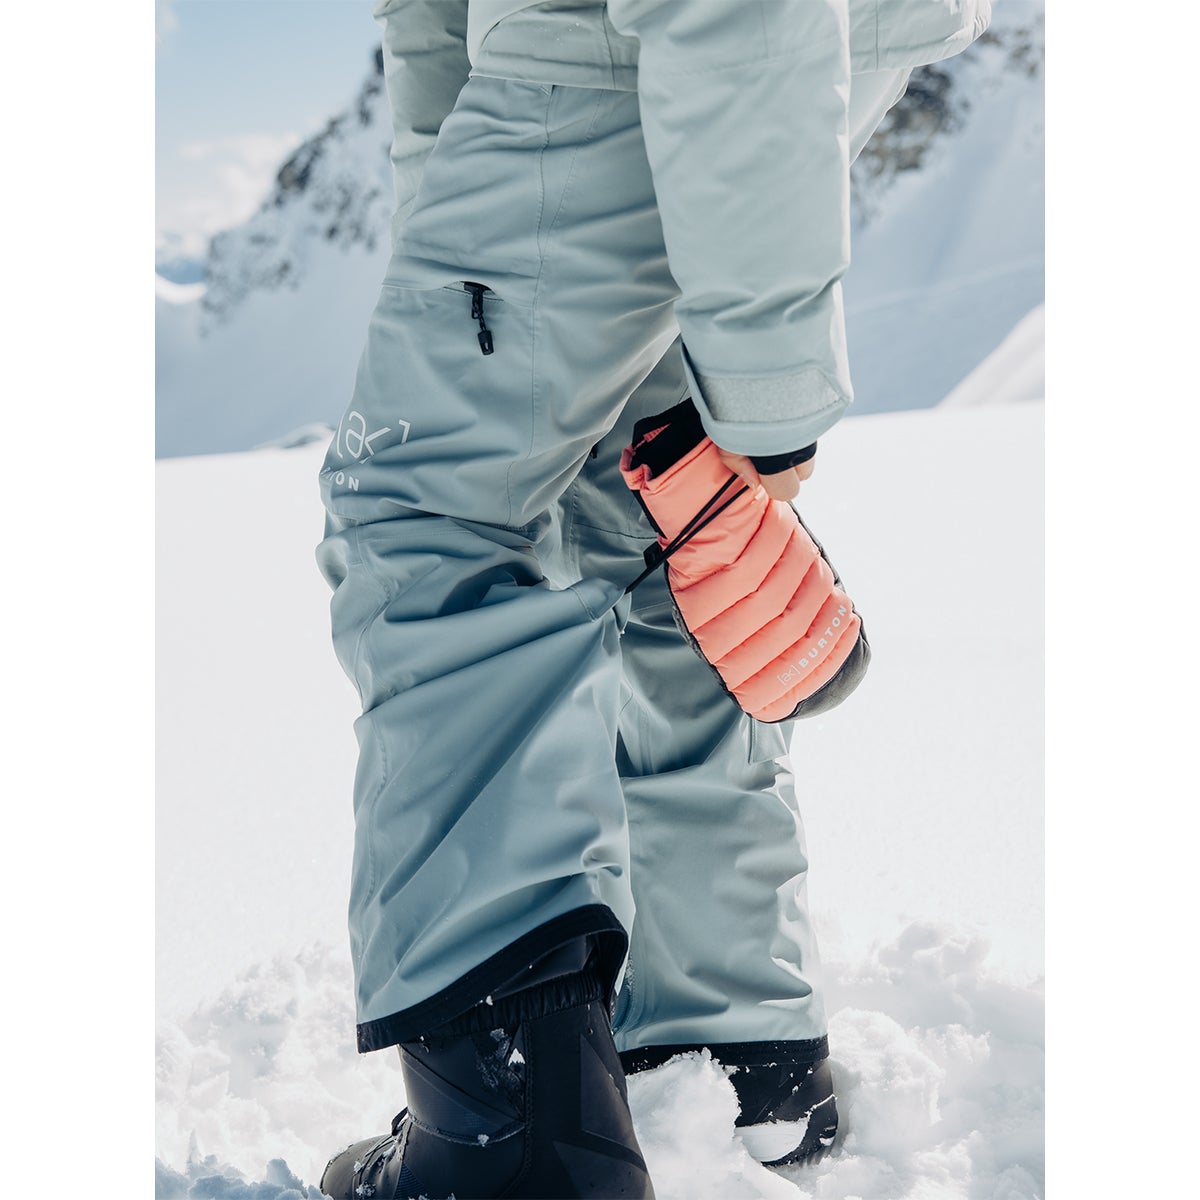 BURTON-W AK GORE SM INS PT REEF PINK - Snowboard trousers